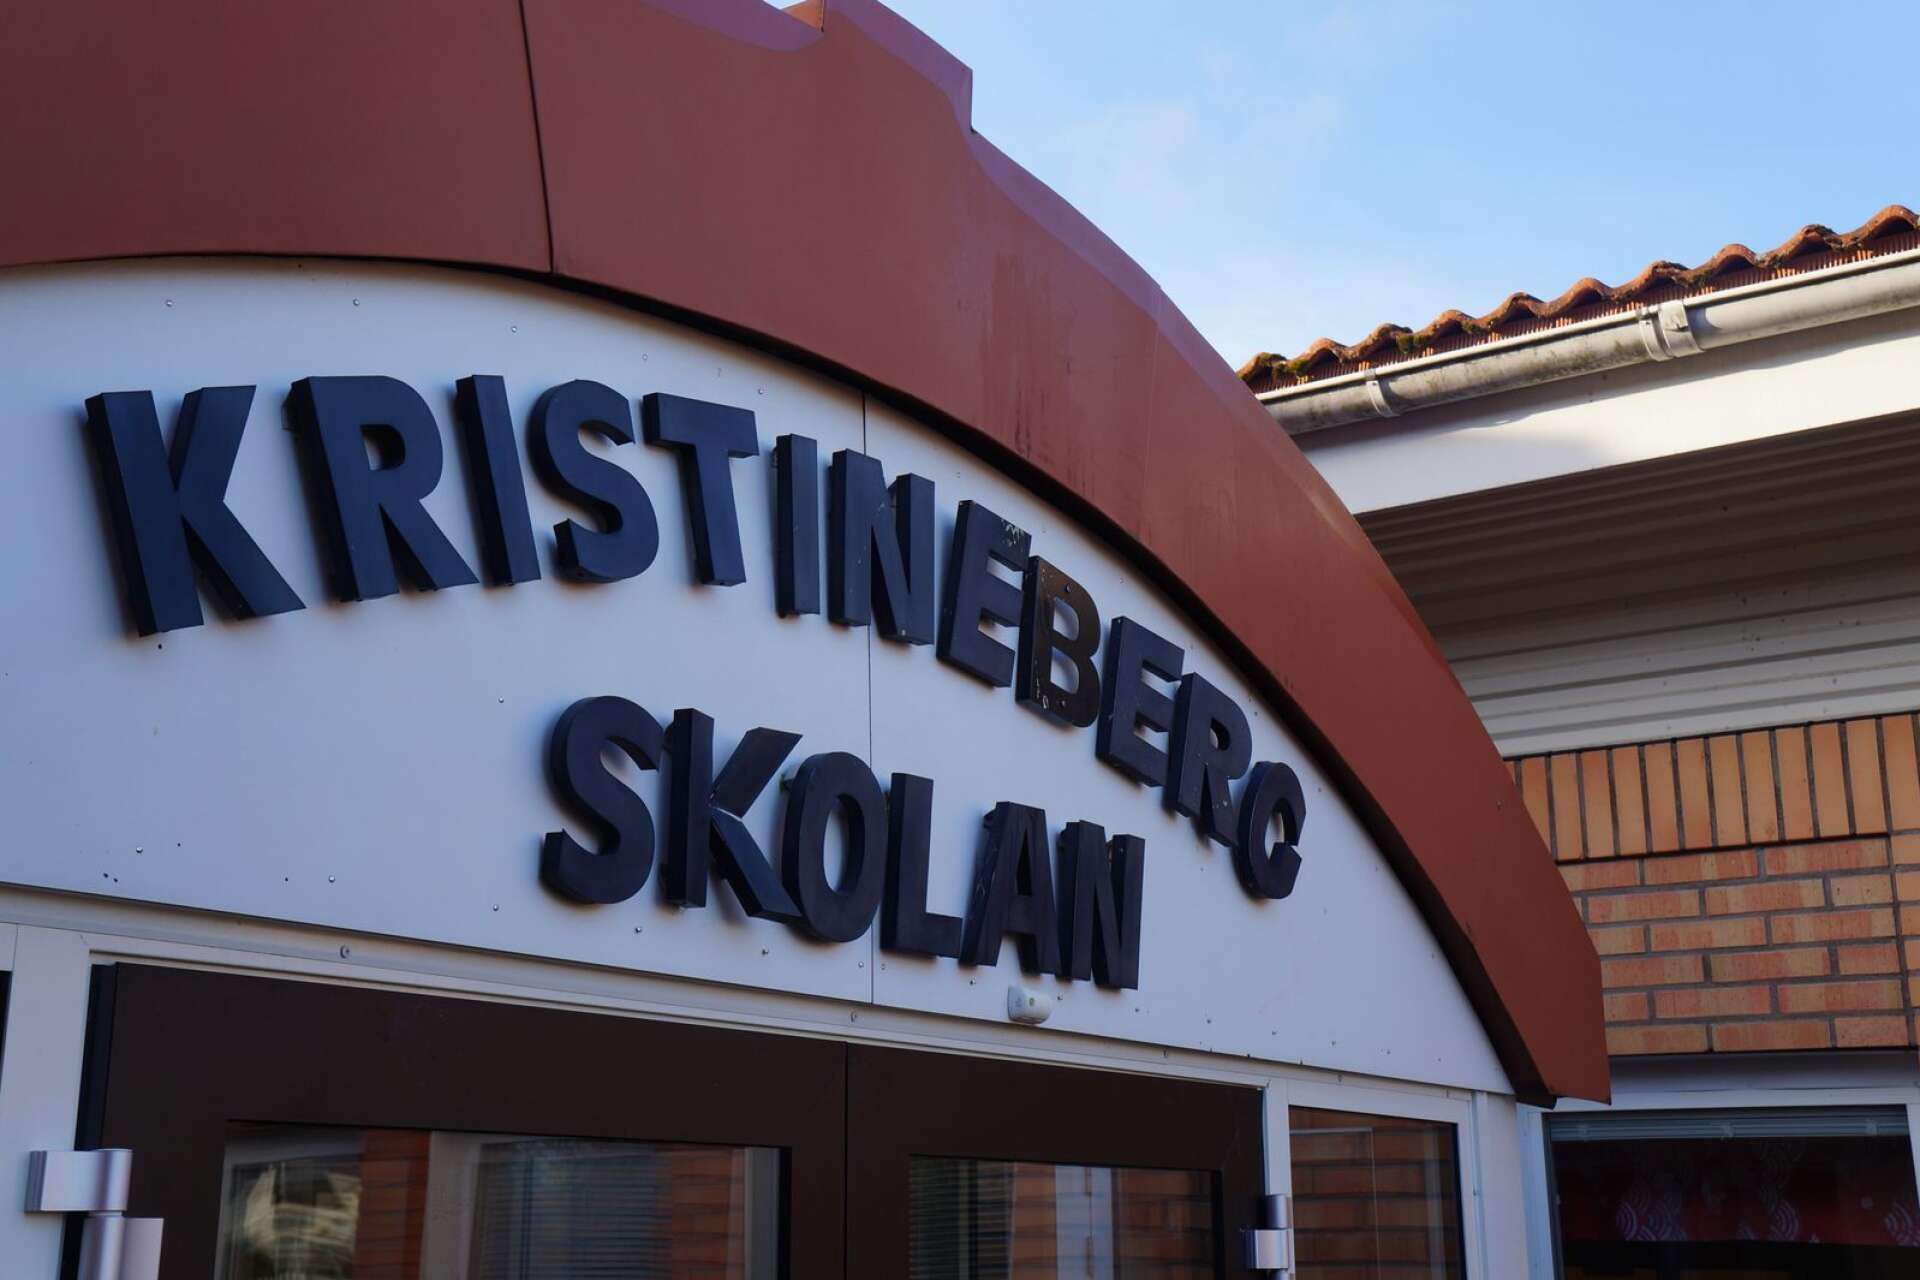 Om två år är det tänkt att renoveringen av Kristinebergskolan ska starta. 